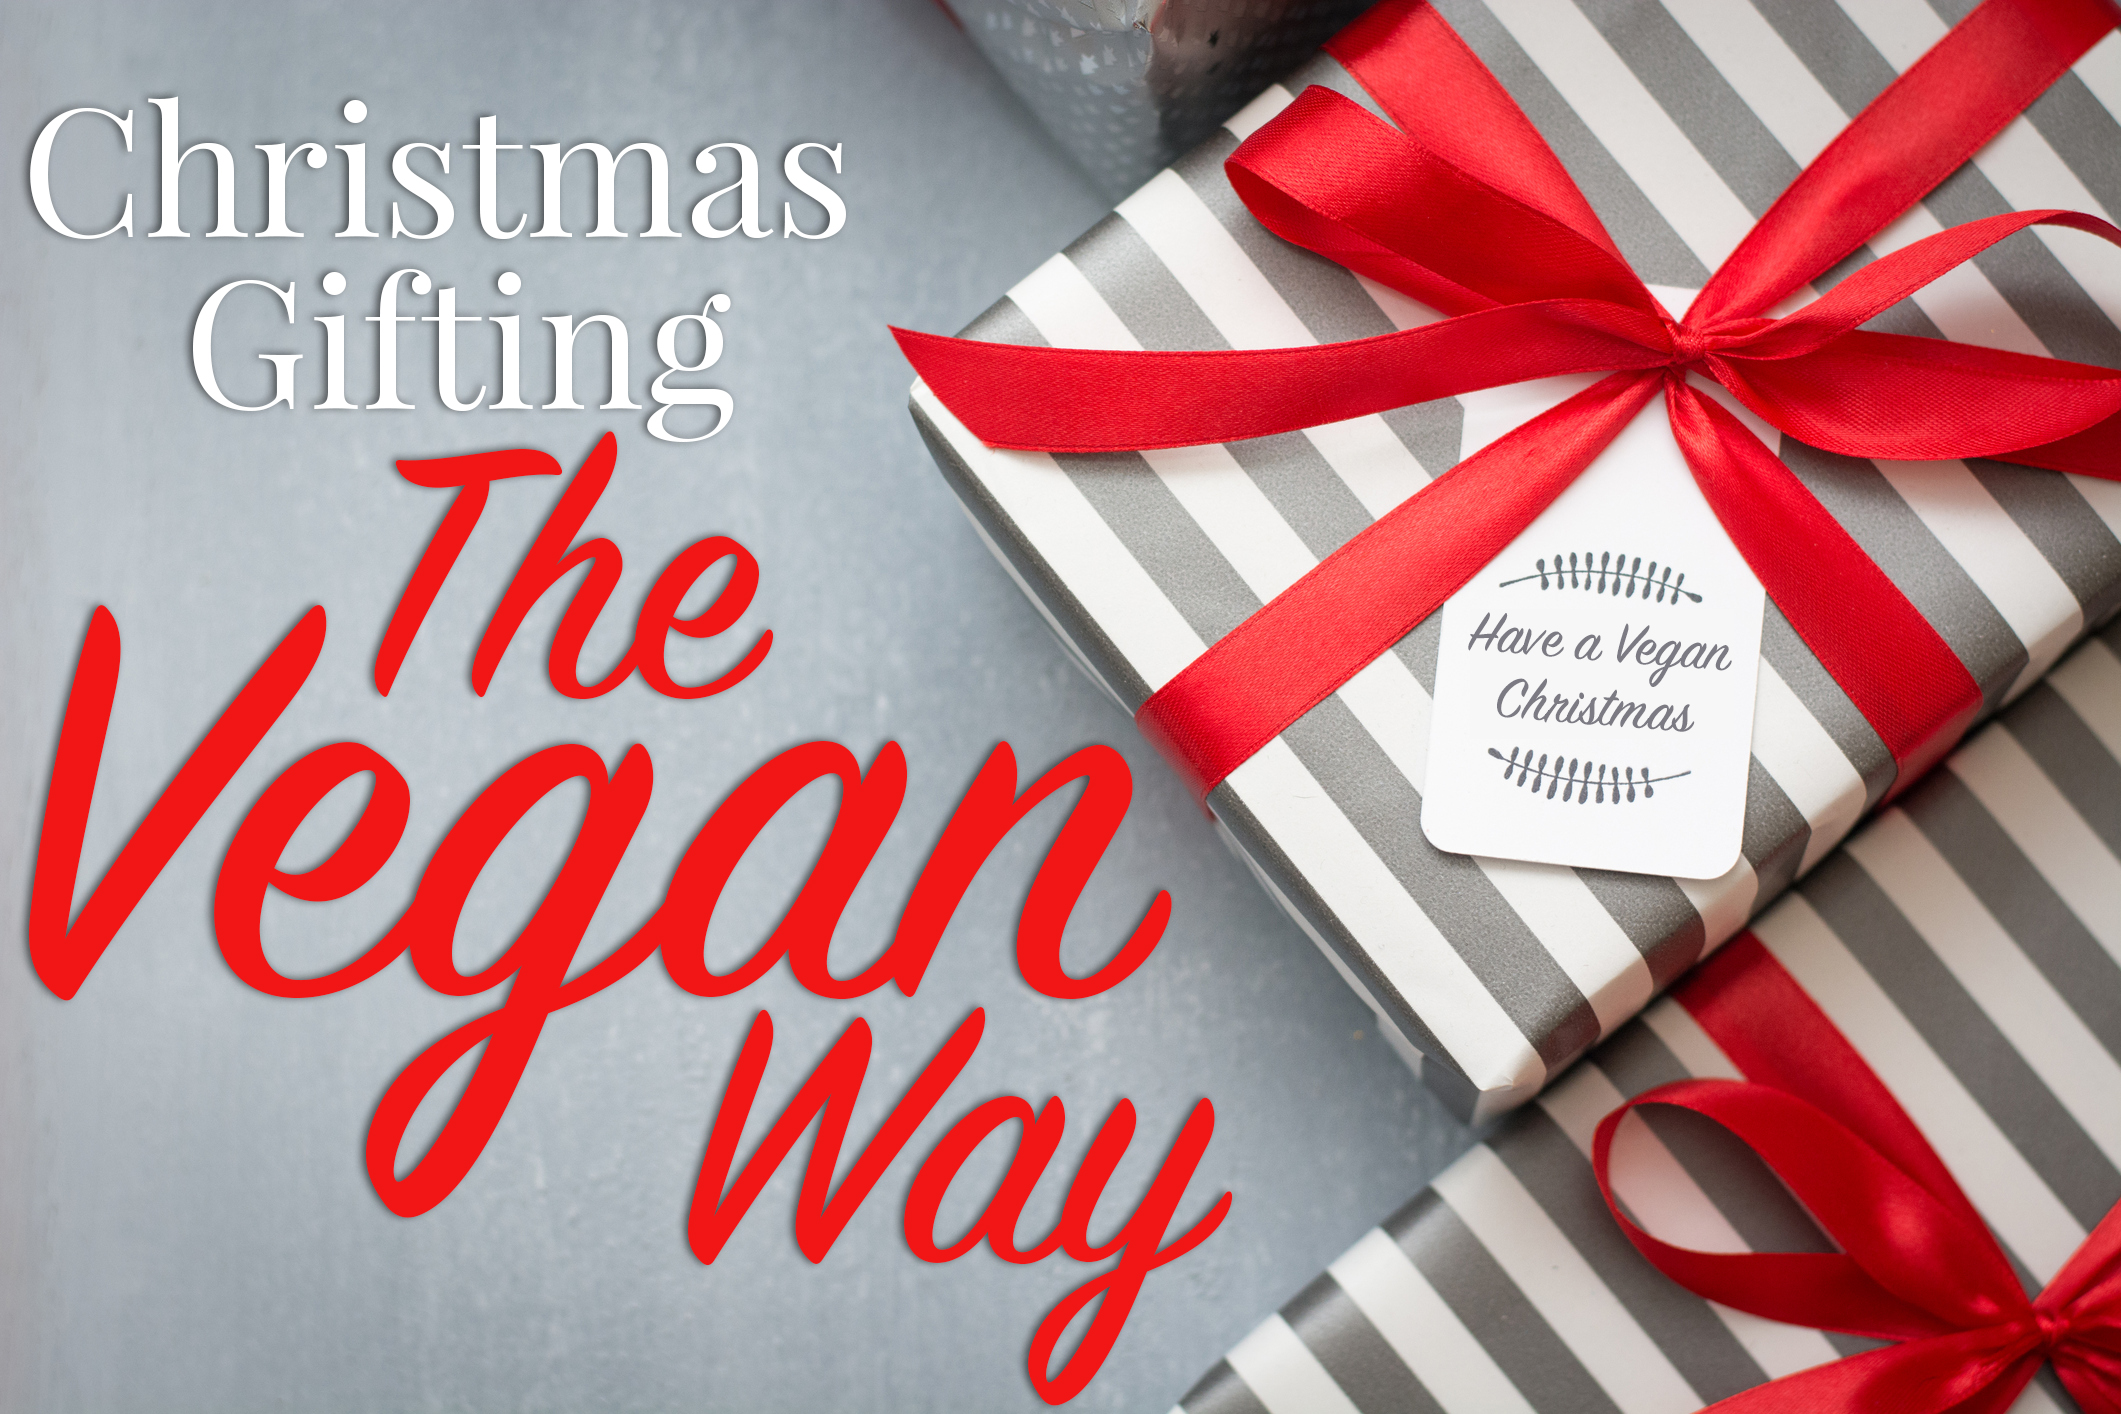 Christmas Gifting The Vegan Way